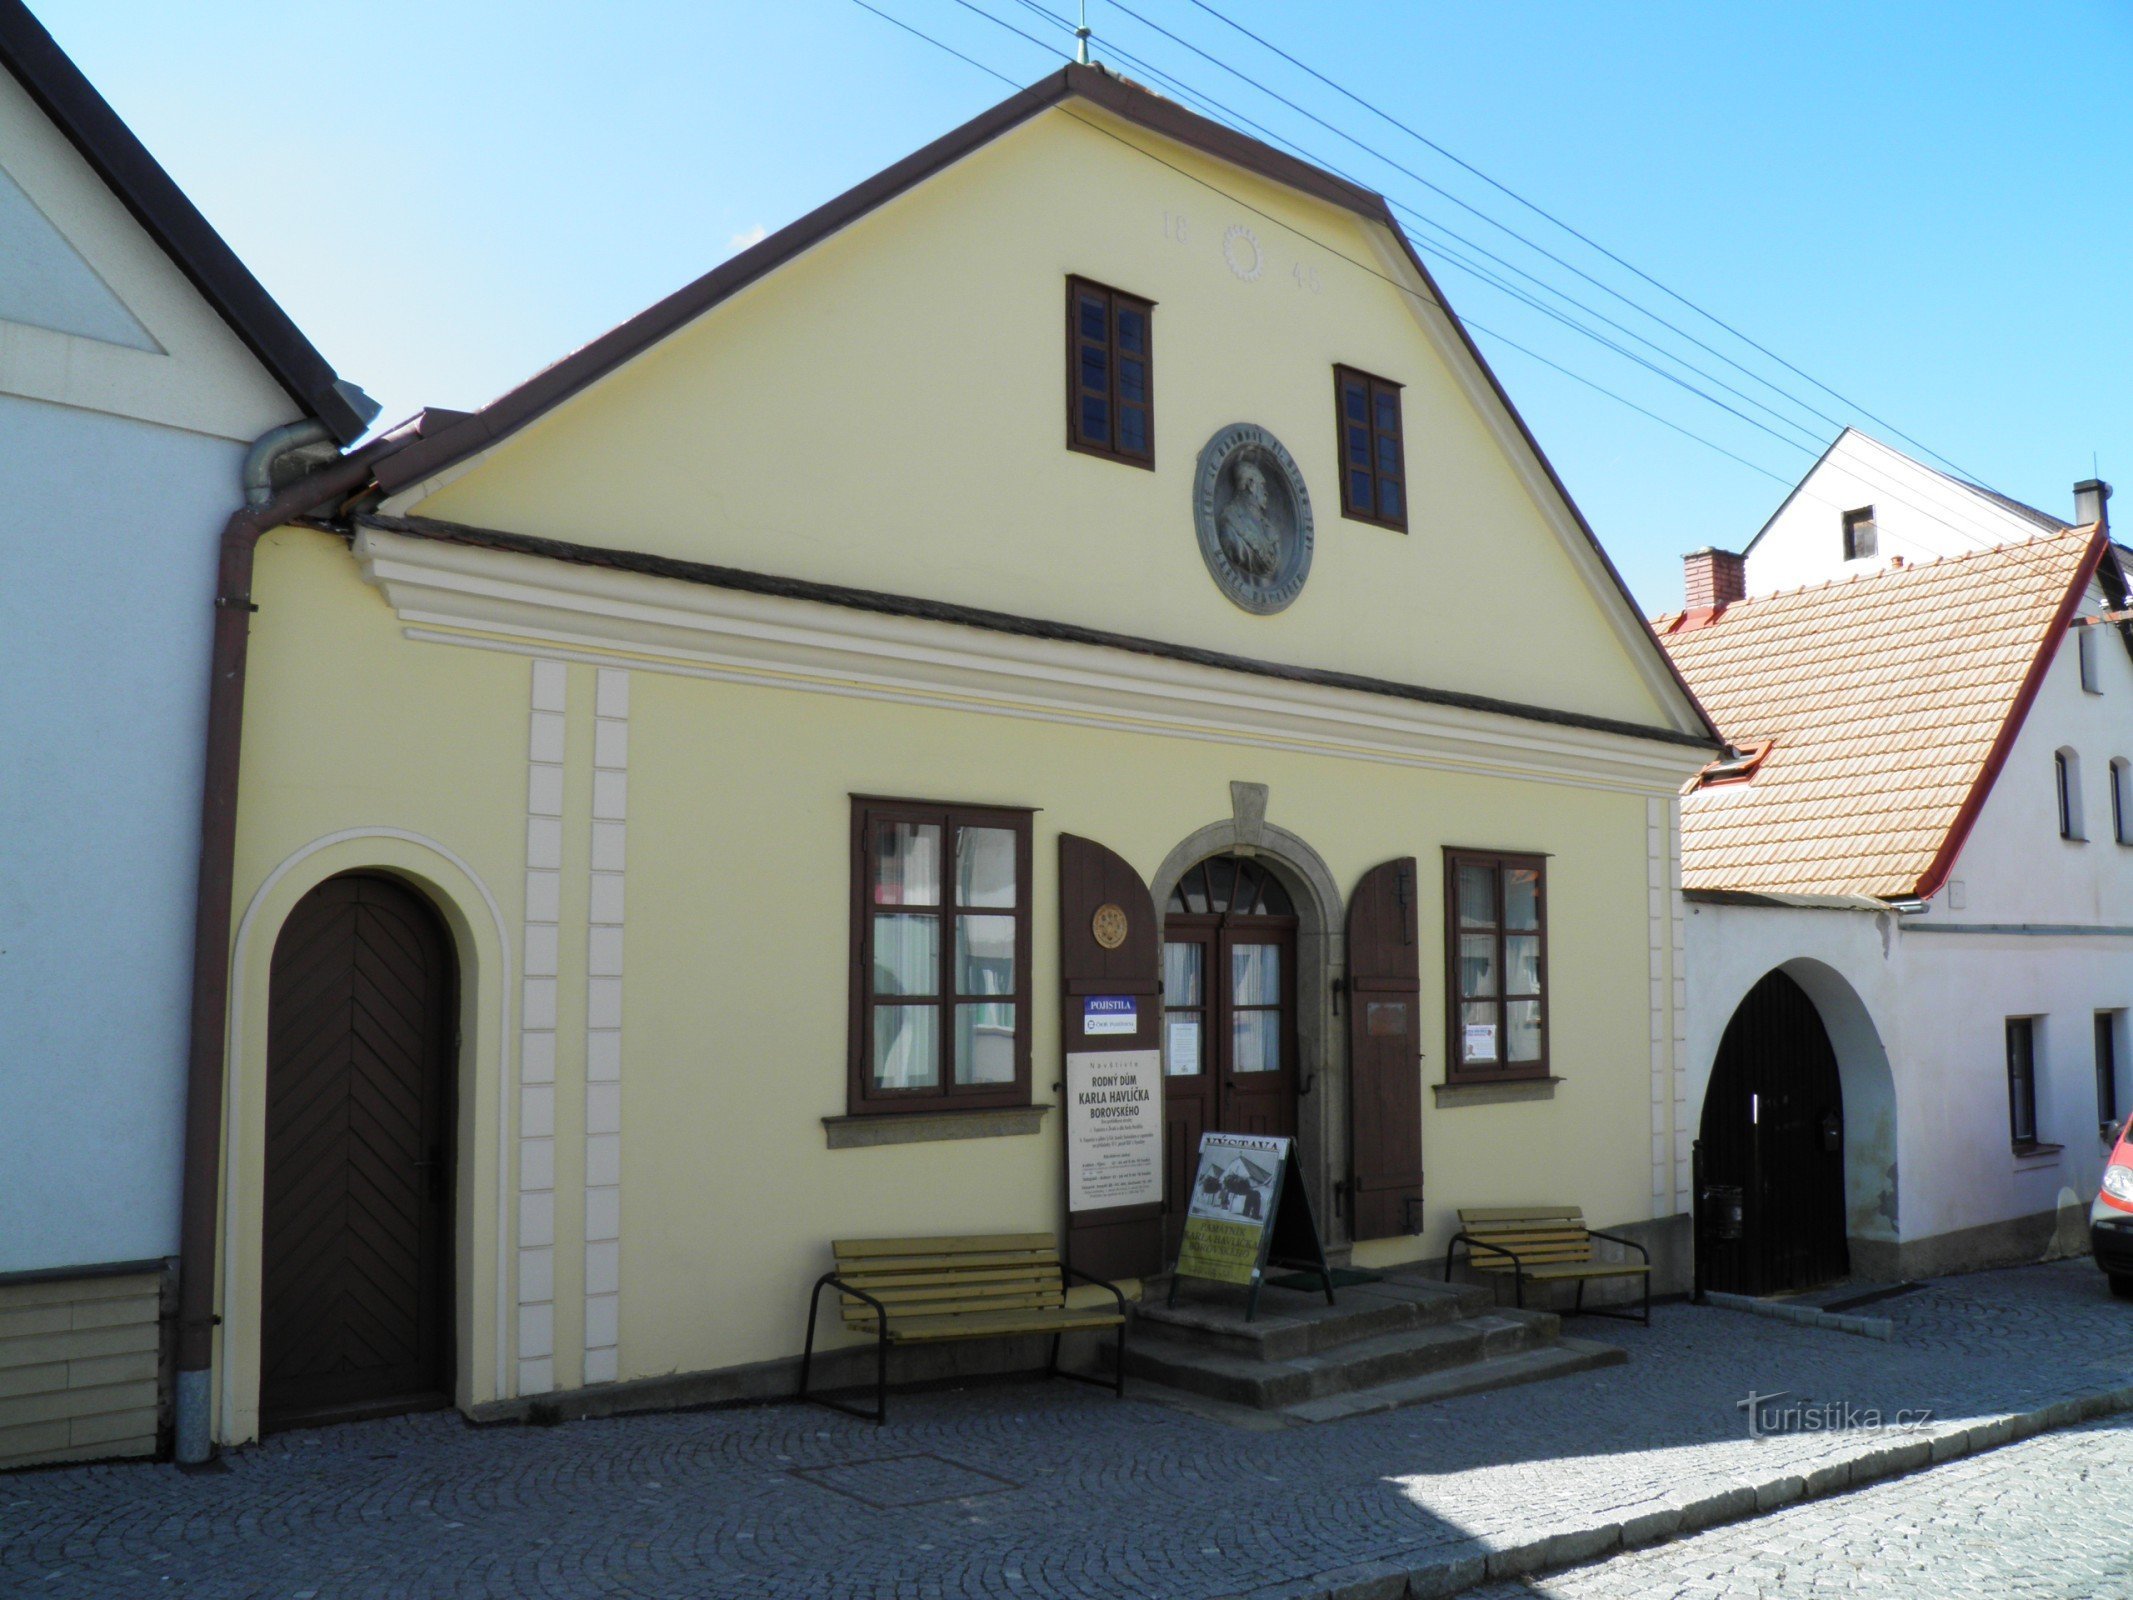 El lugar de nacimiento de KH Borovský.